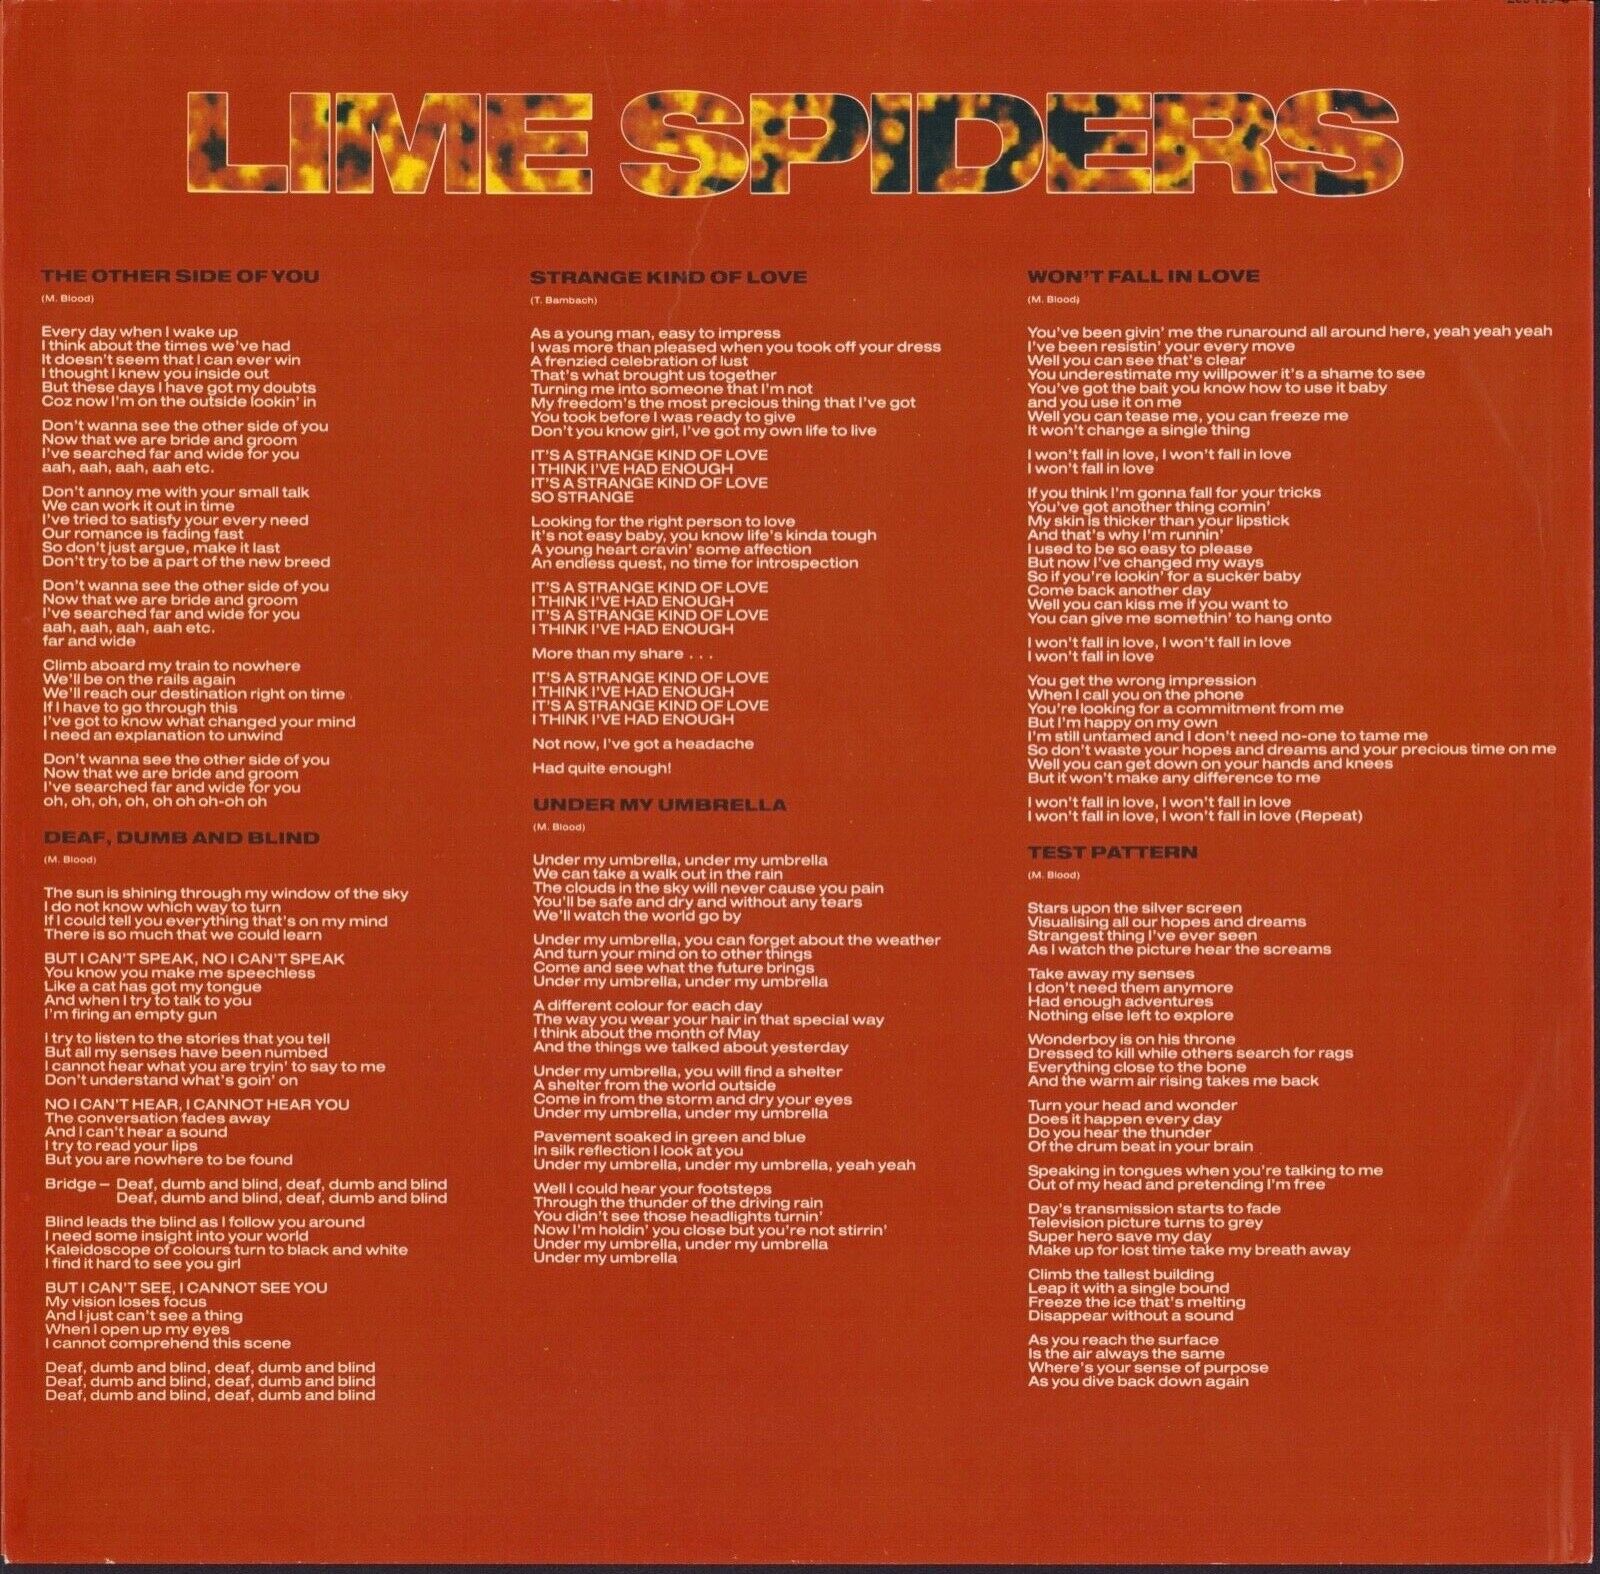 Lime Spiders - Volatile Vinyl LP